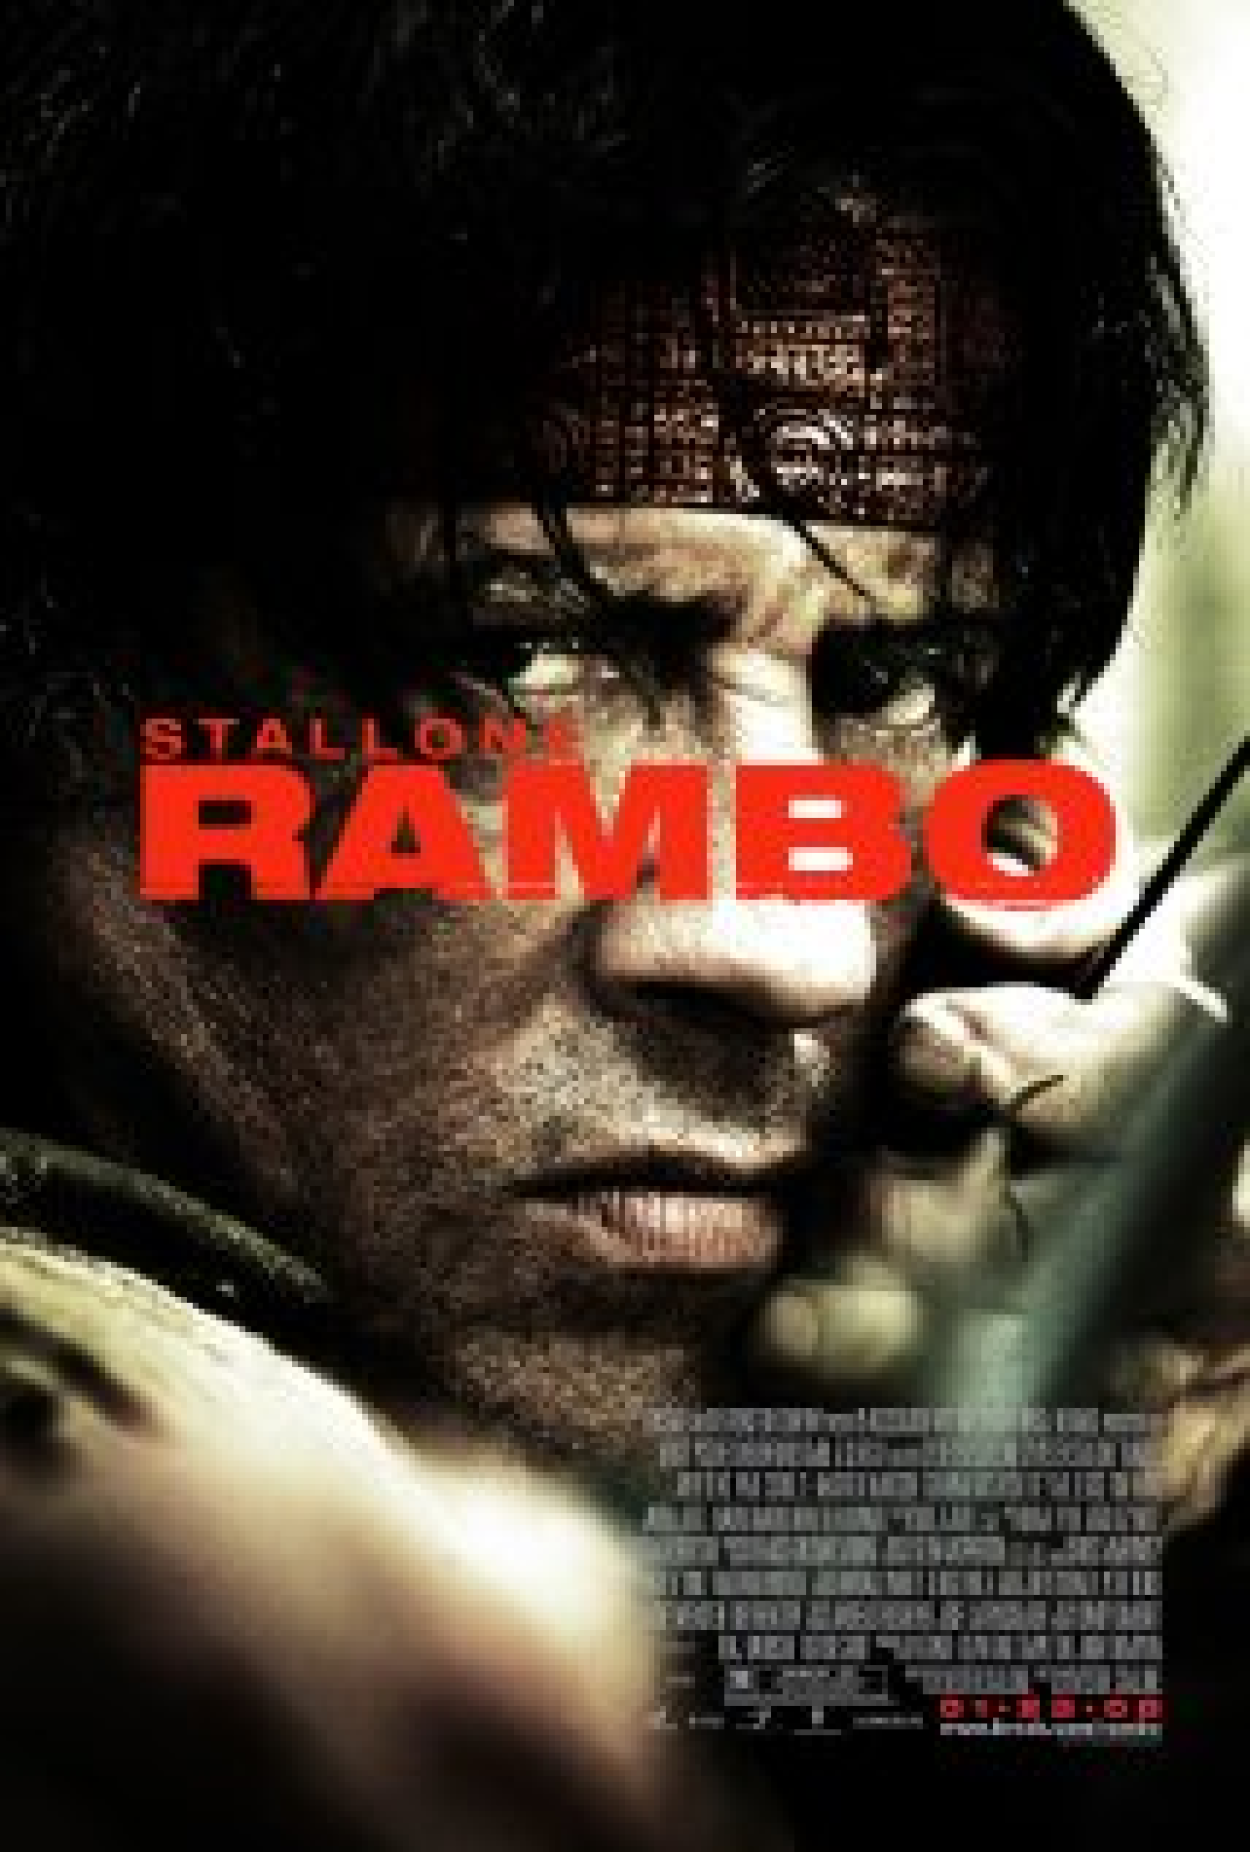 Rambo: onde assistir no streaming e ordem correta dos filmes